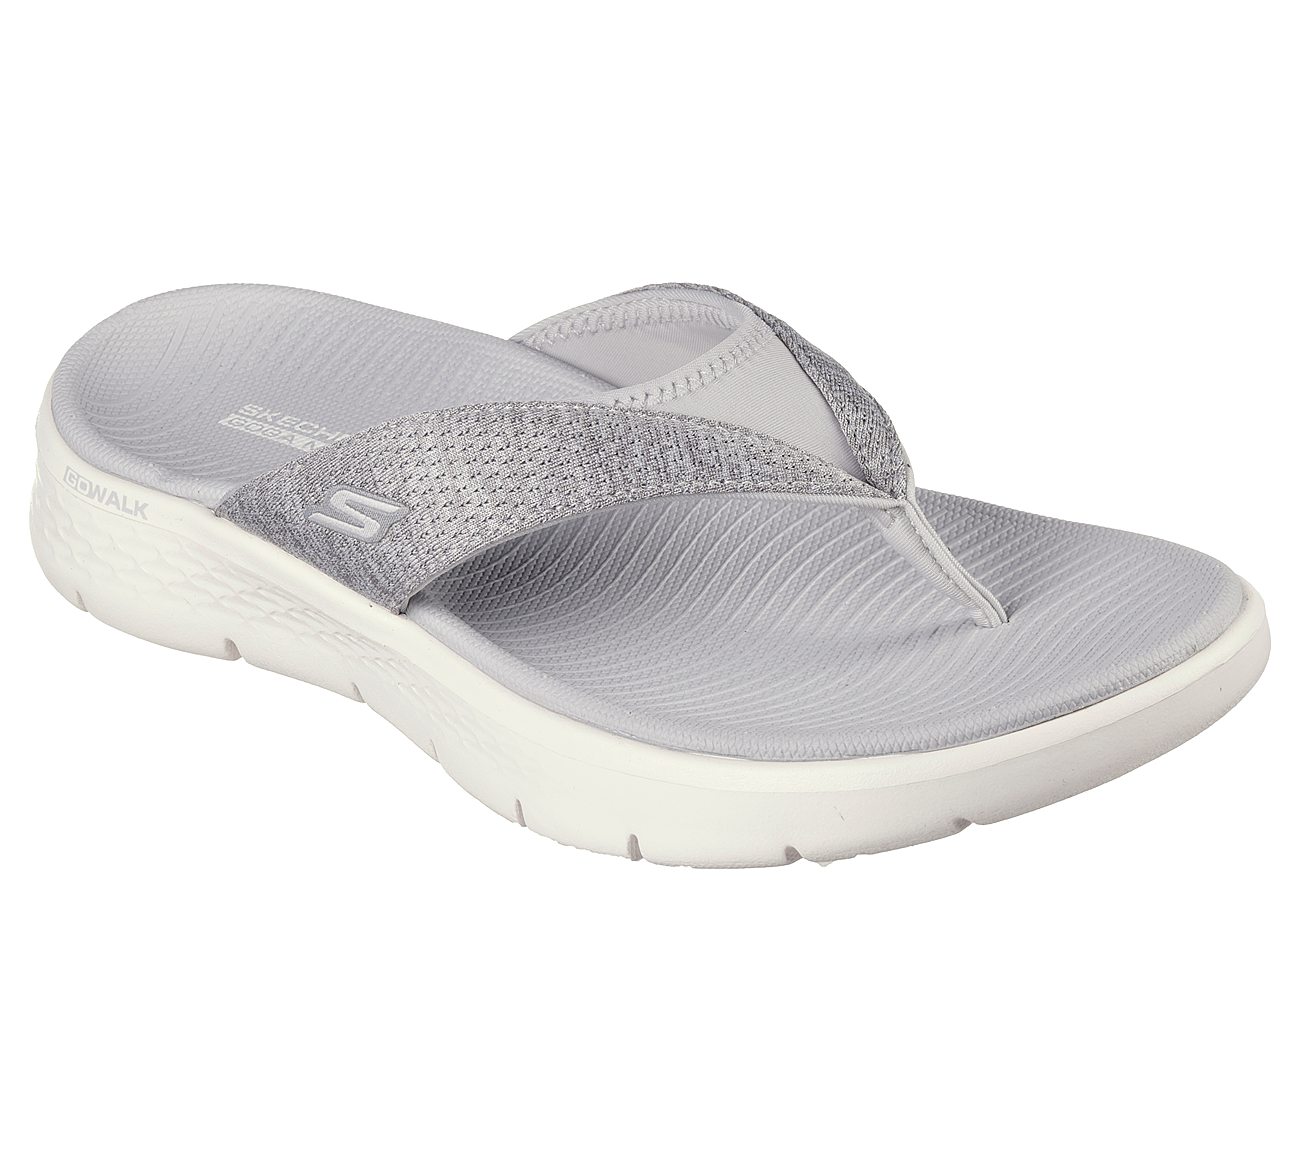 Skechers Grey Go Walk Flex Sandal Slippers For Women - Style ID: 141401 ...